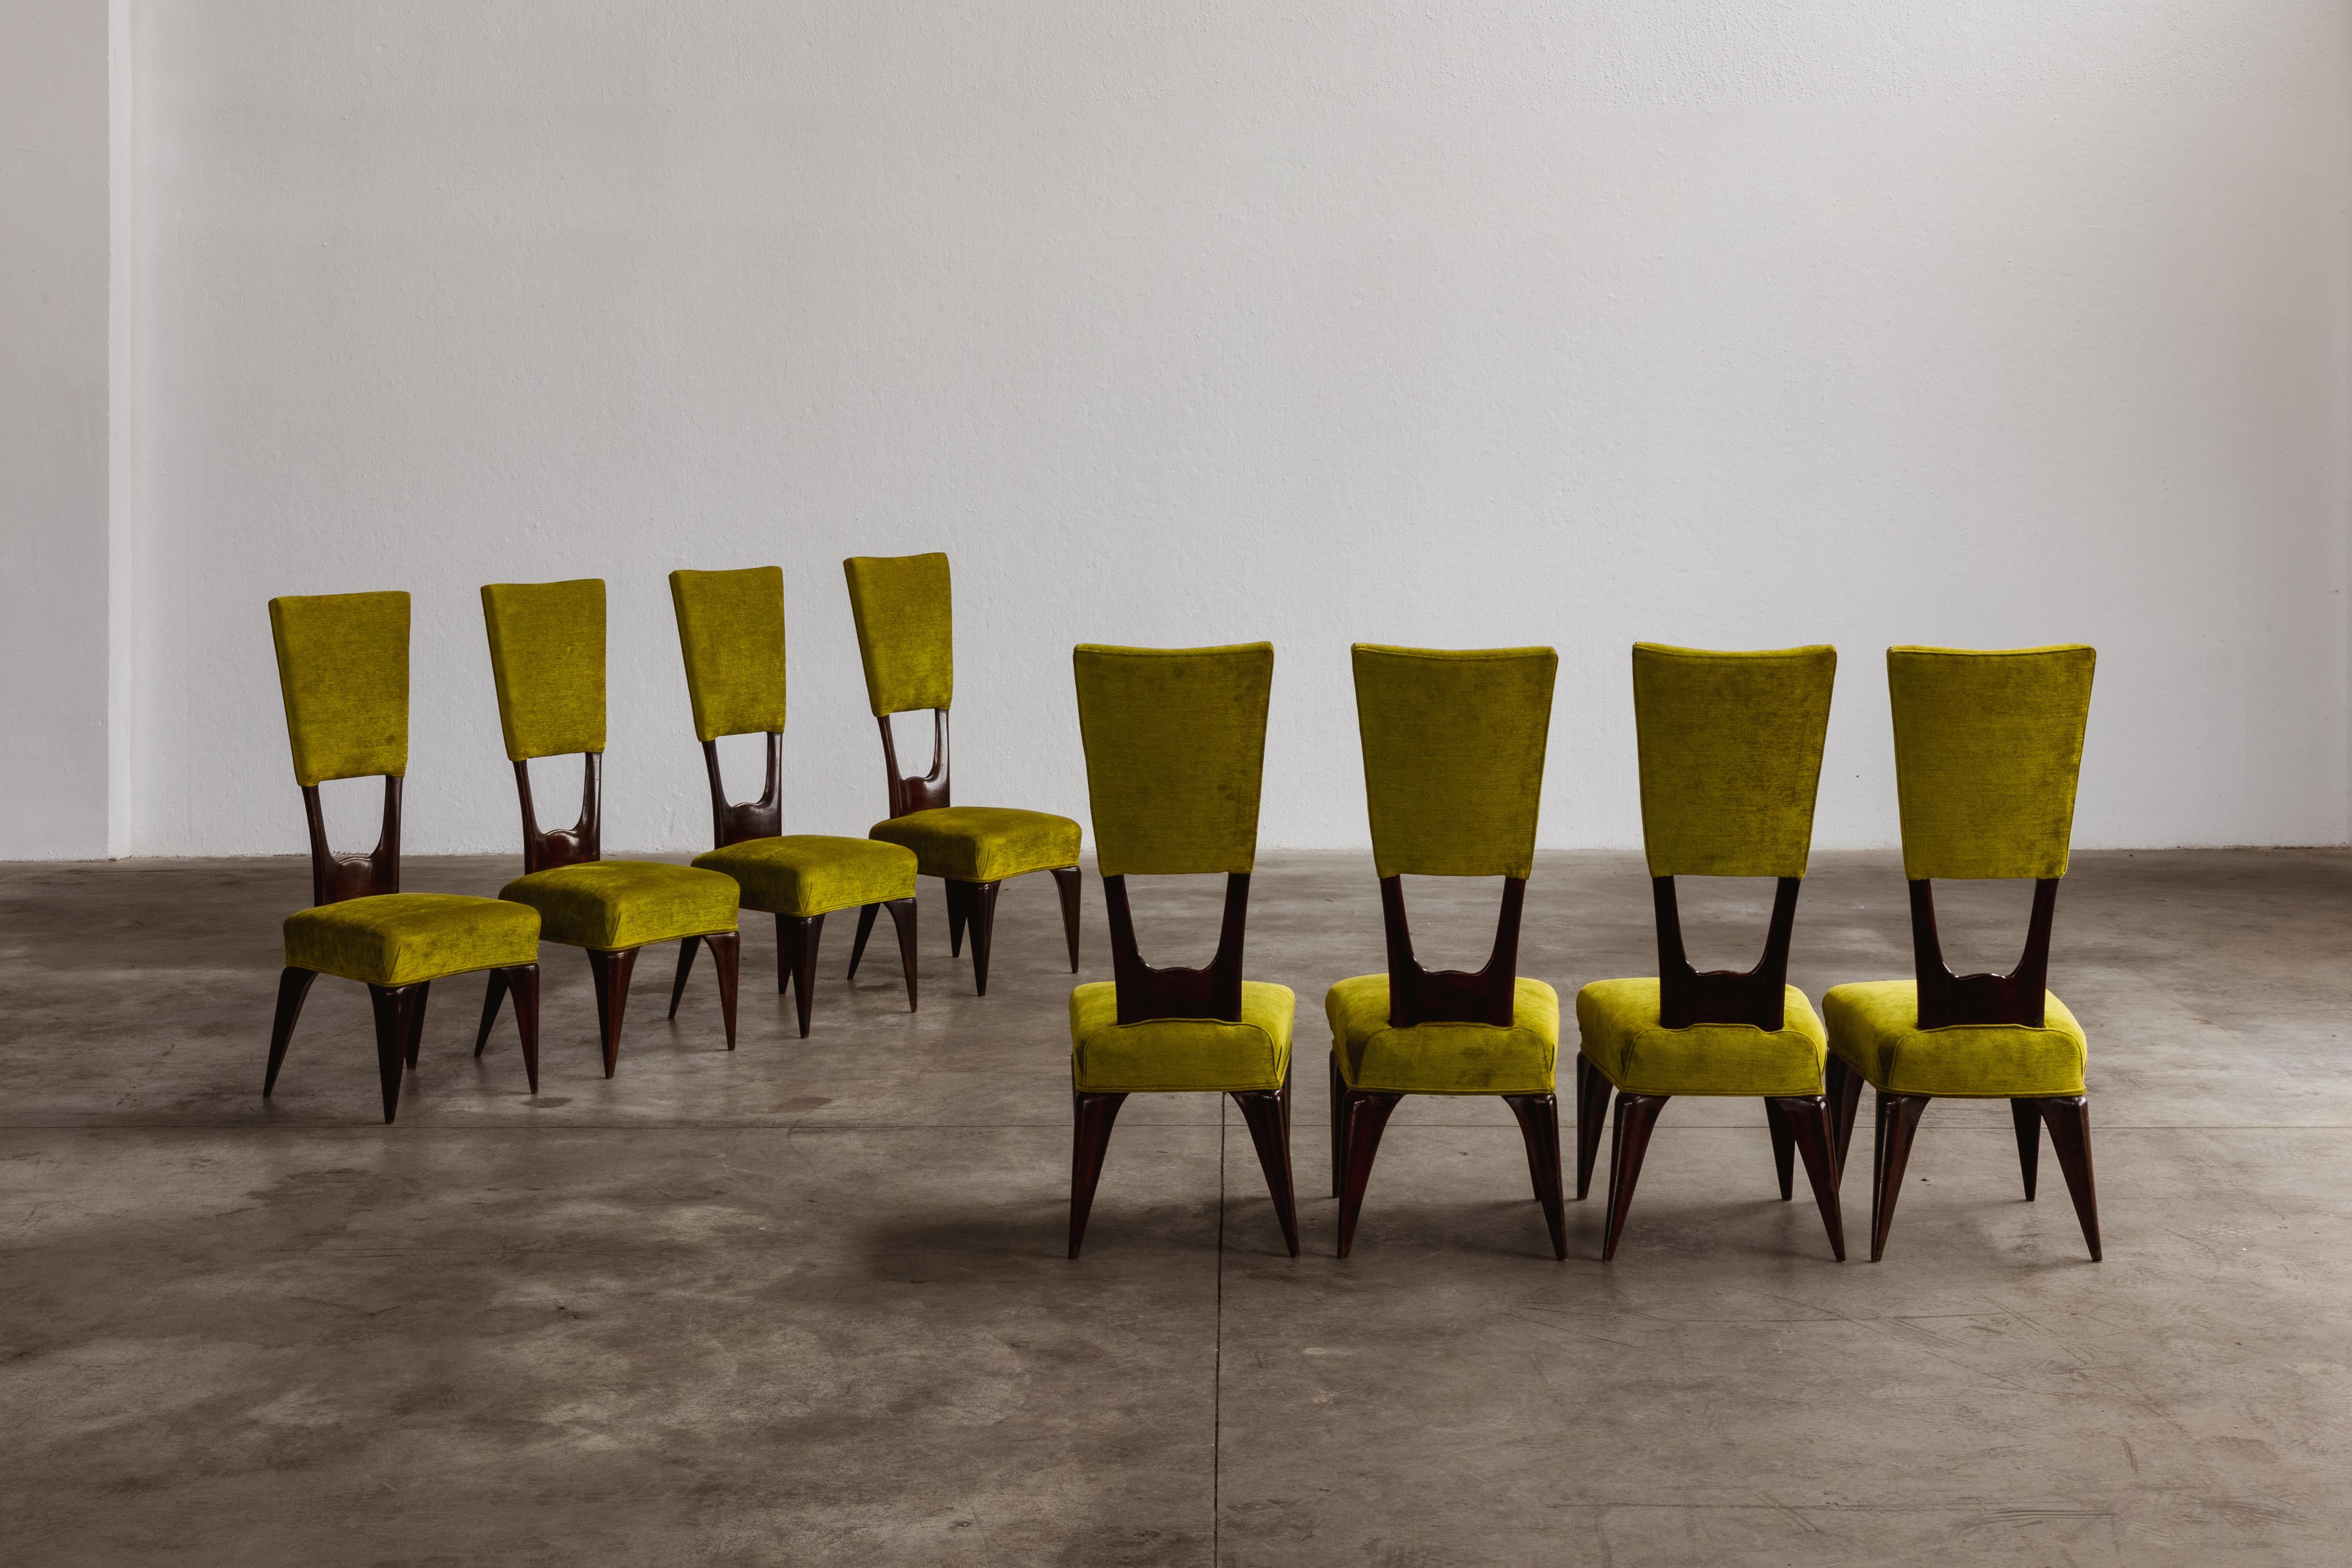 Chaises de salle à manger Vittorio Valabrega, velours et bois, Italie, années 1950, ensemble de huit.

Ces chaises sculptées rappellent le mouvement Art déco par leurs formes élégantes. La structure en bois est soigneusement travaillée dans chaque